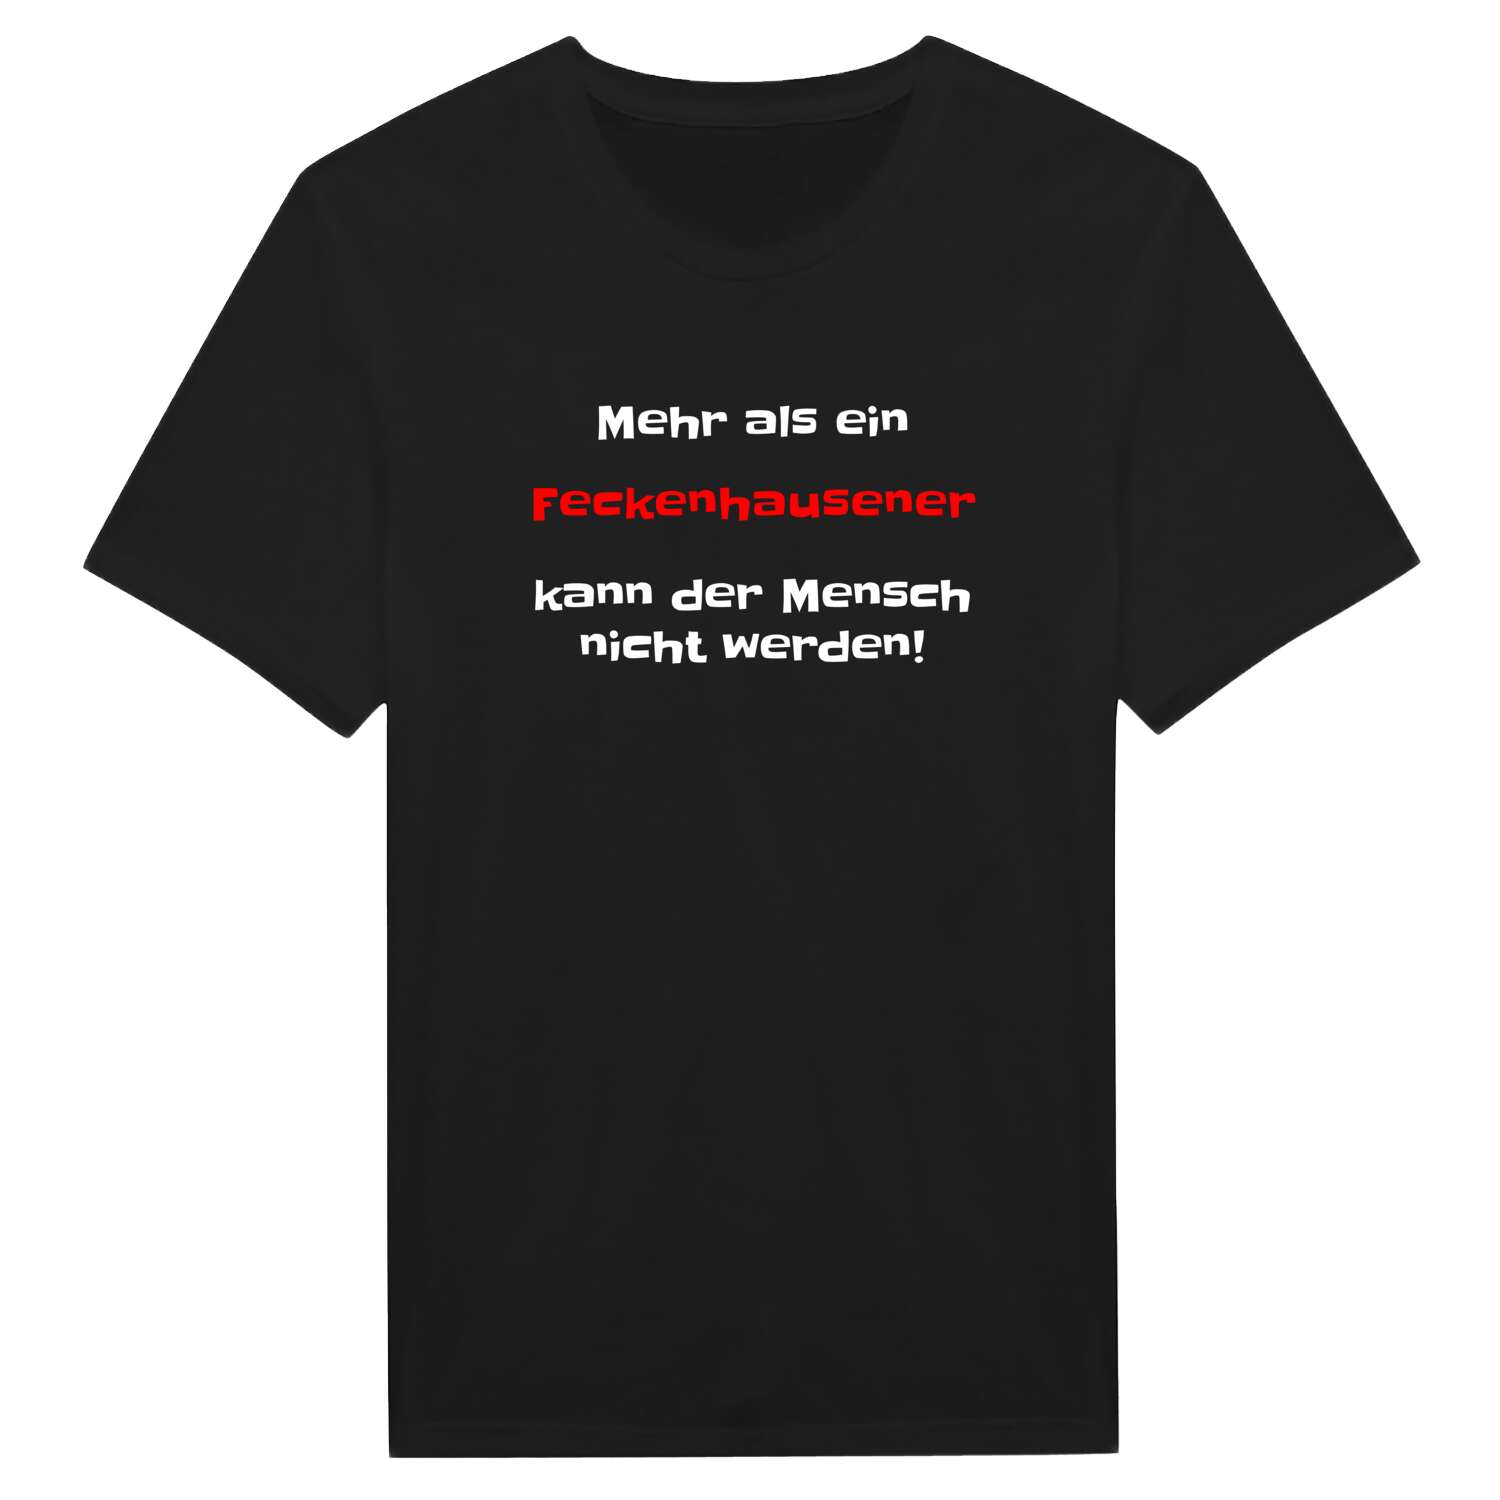 Feckenhausen T-Shirt »Mehr als ein«